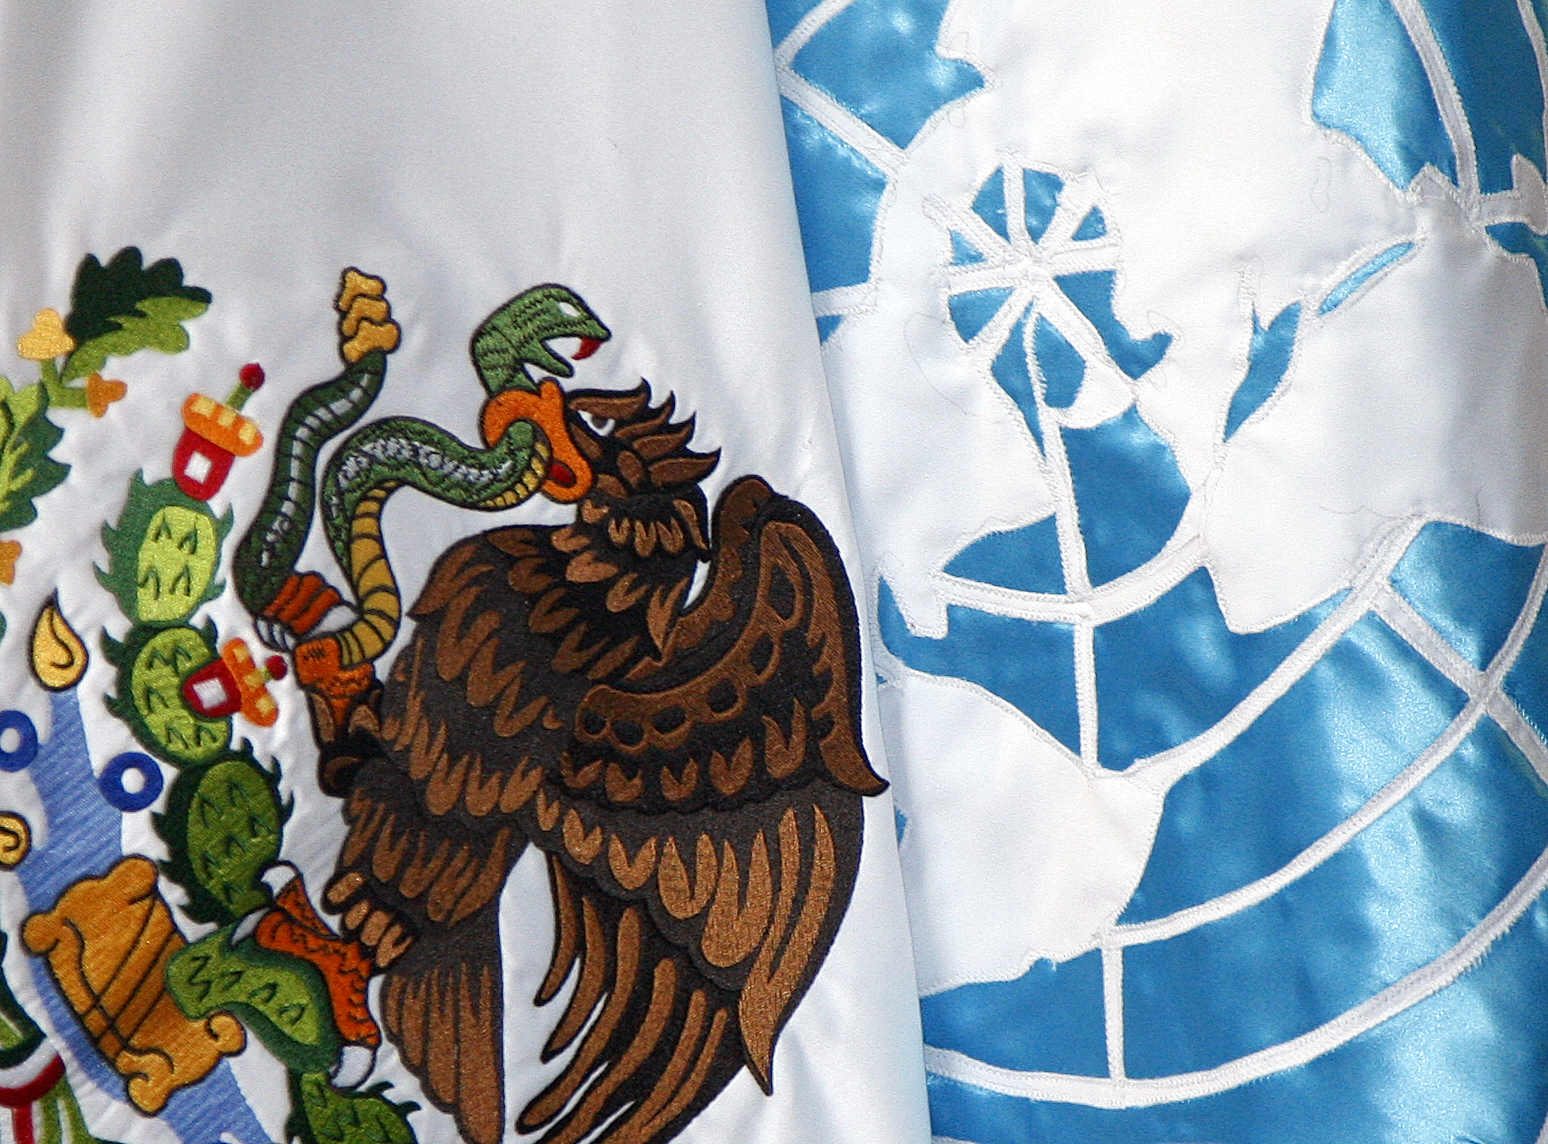  México asumirá vicepresidencia de grupo asesor de la ONU